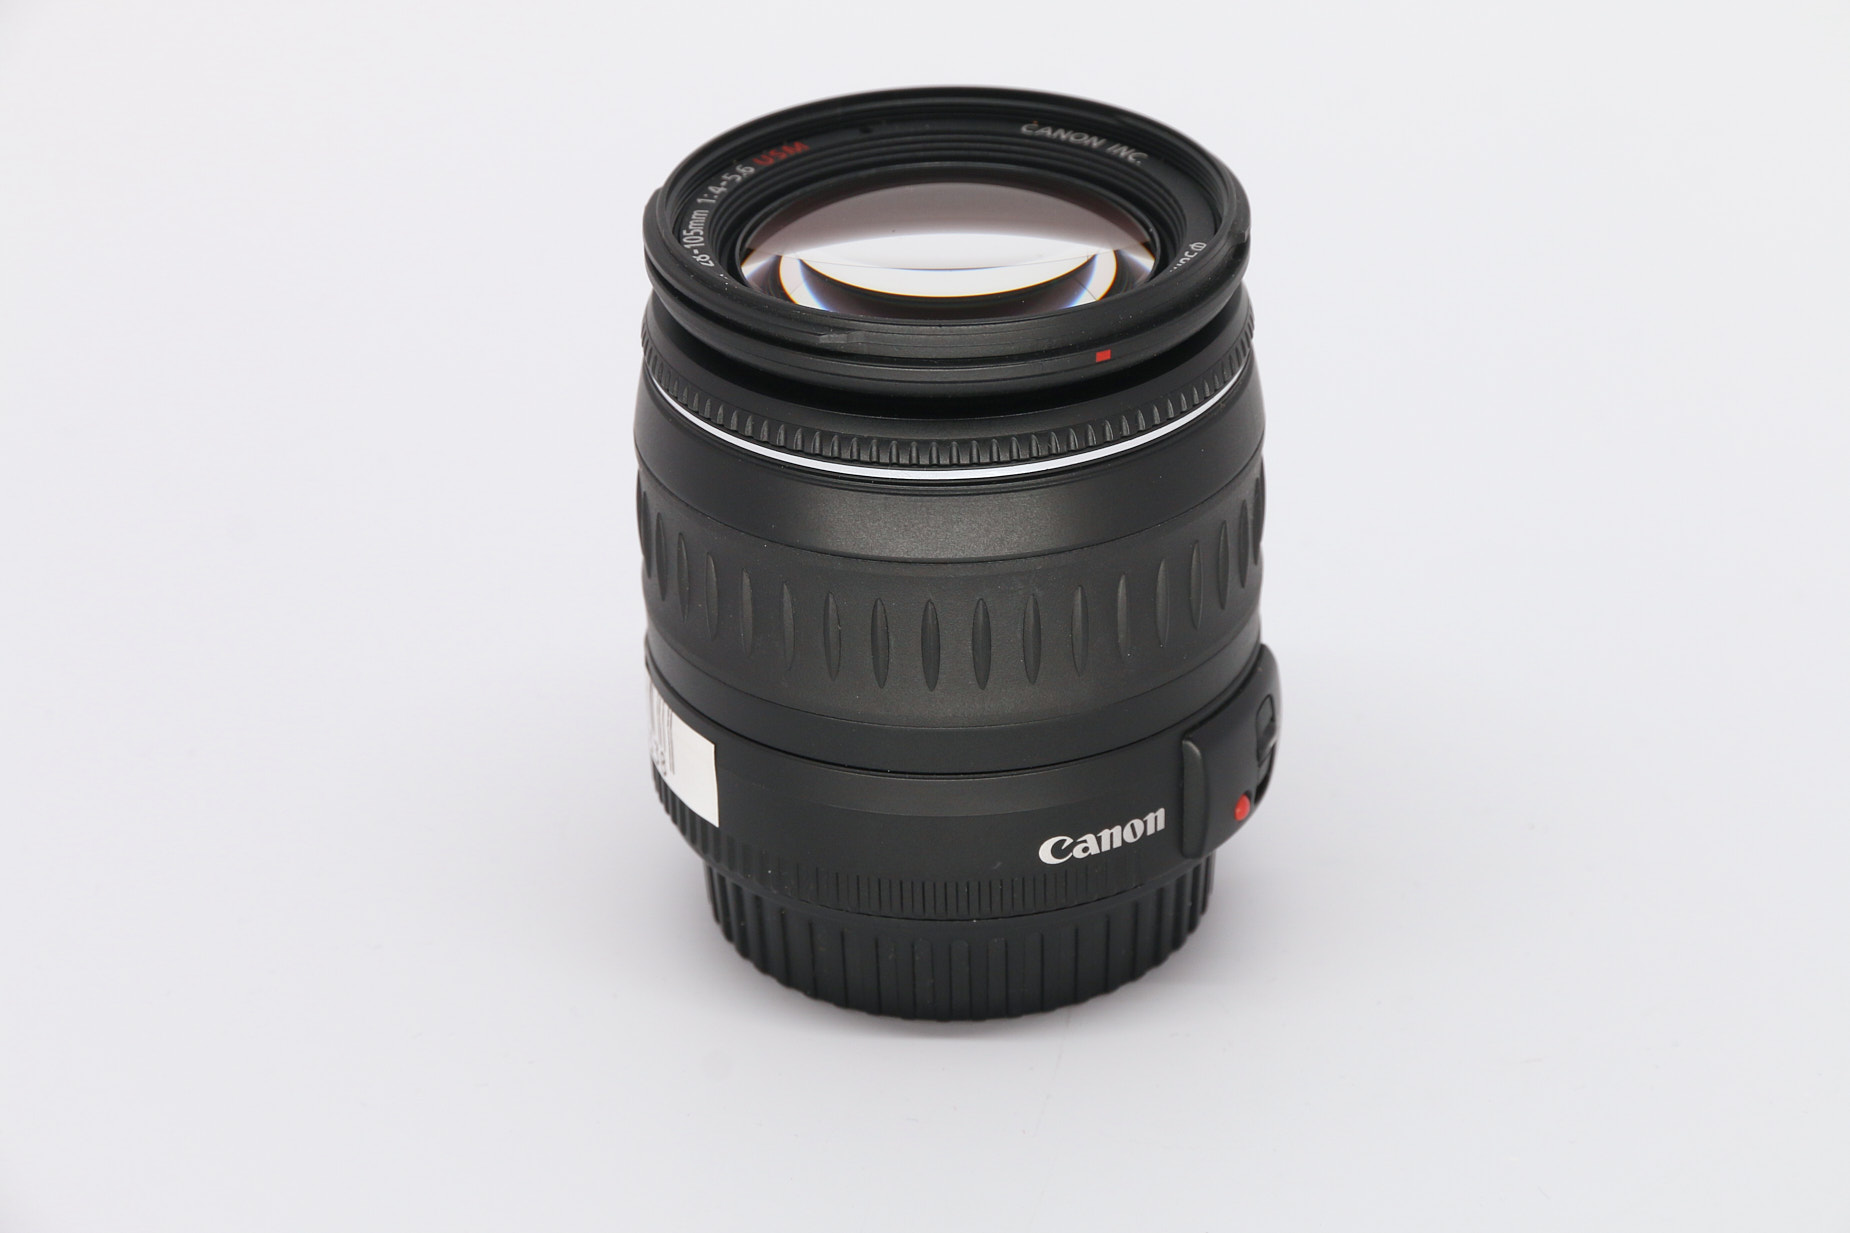 Canon EF 28-105mm f4-5.6 USM gebraucht Bild 03